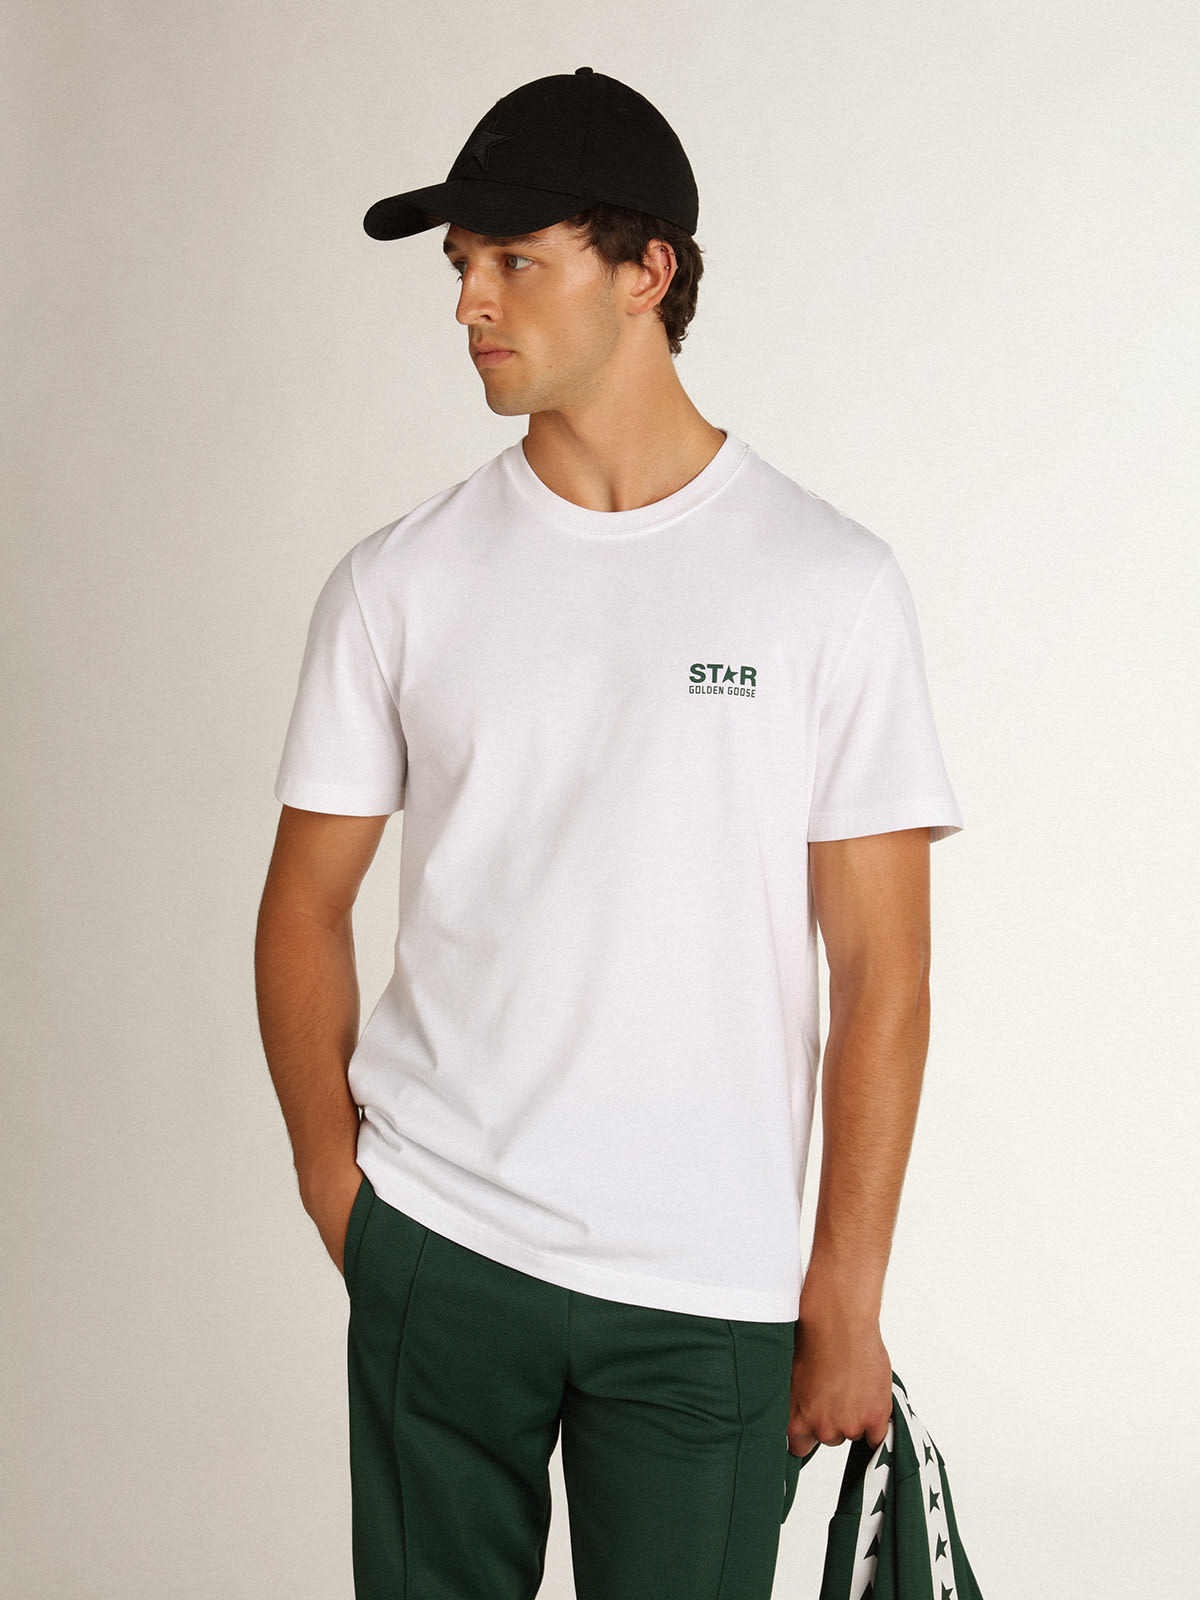 Golden Goose - T-shirt da uomo bianca con logo e stella verdi a contrasto in 